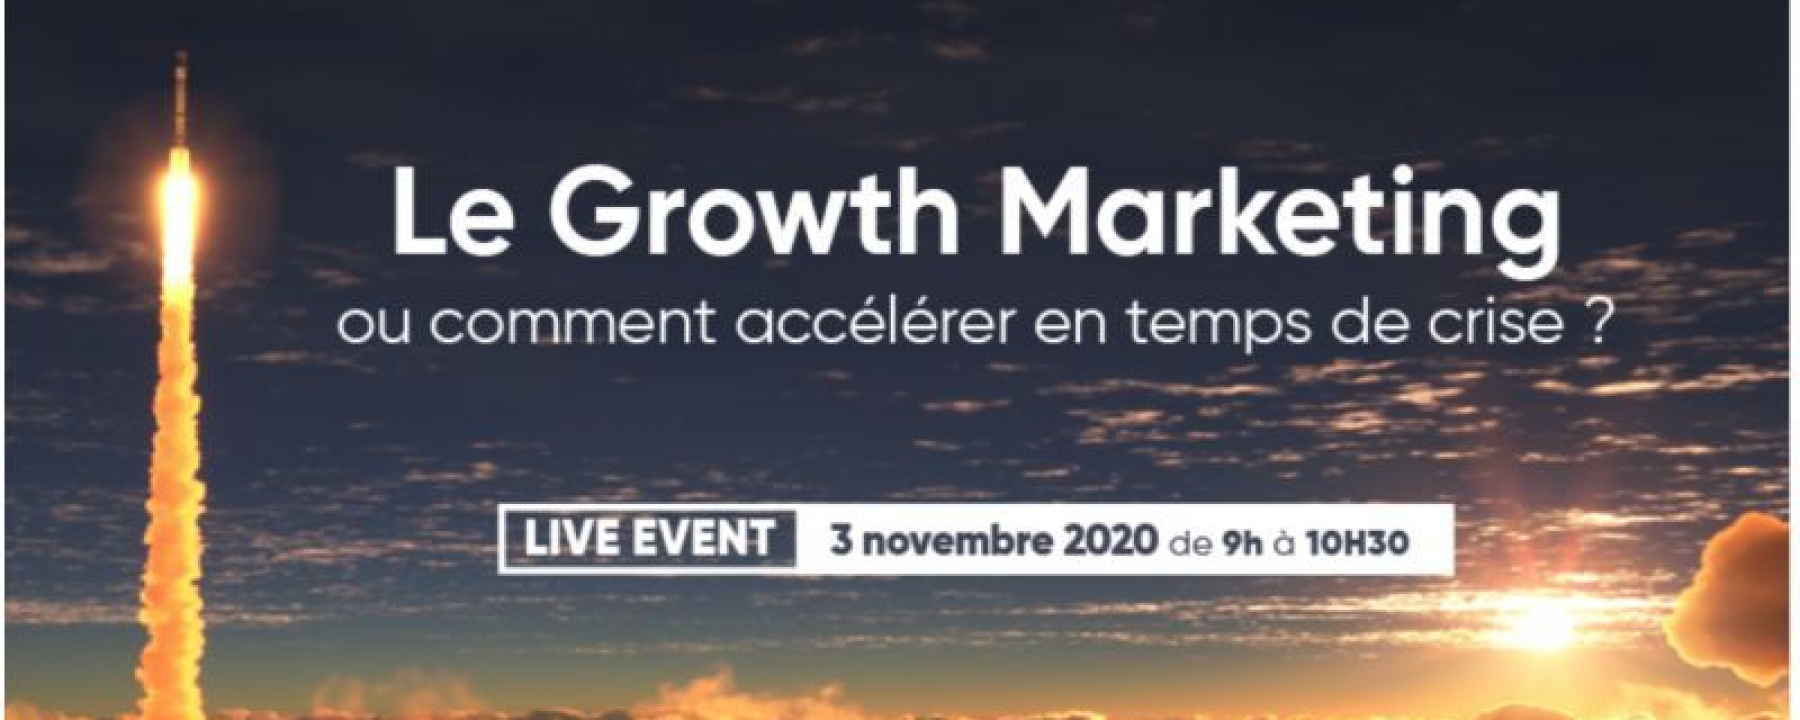 Comment accélérer en temps de crise : le Growth Marketing, webinar organisé par Dixer le 3 novembre 2020